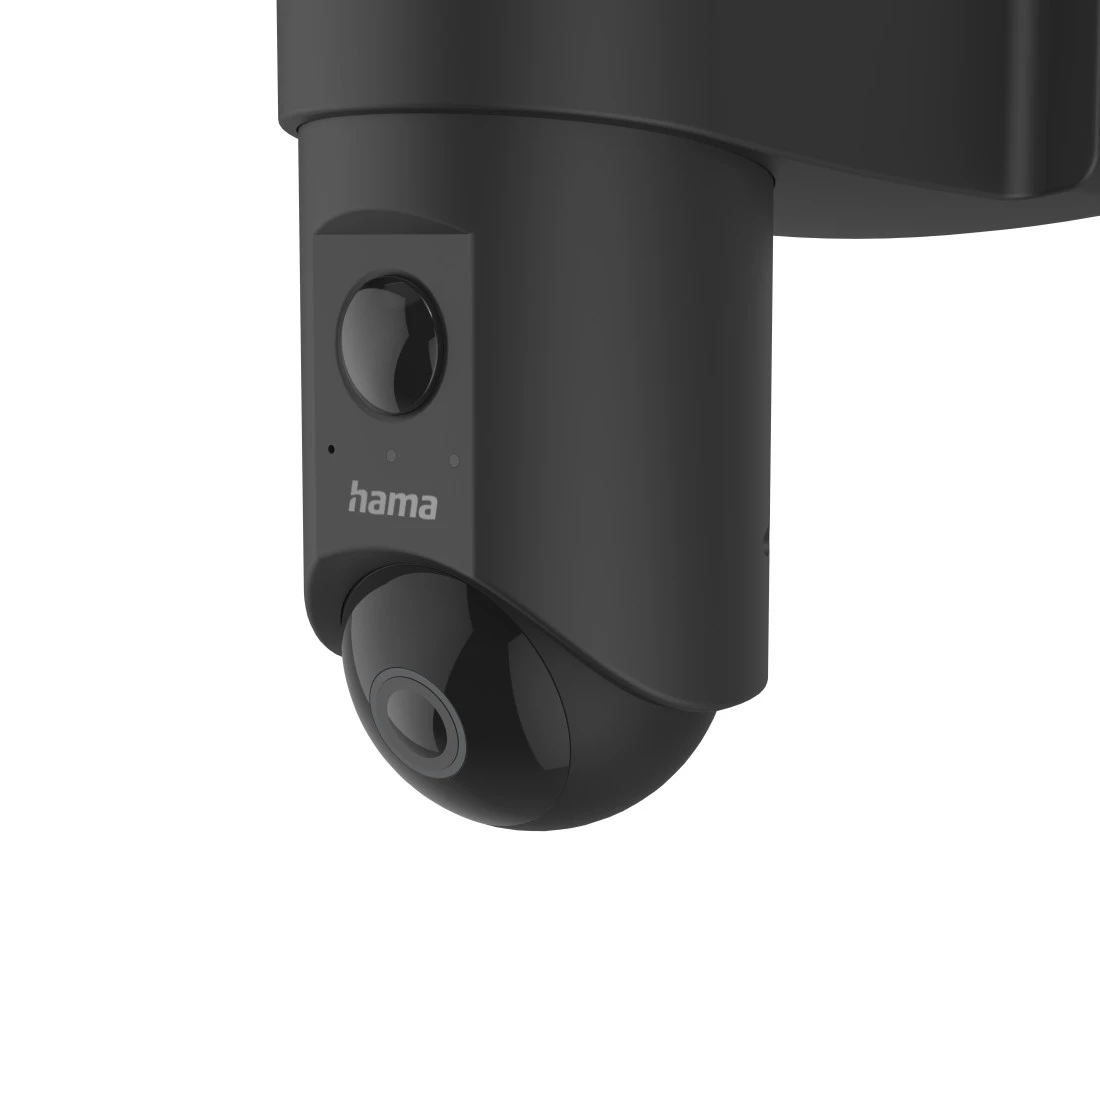 Camera de surveillance sans fil extérieur WIFI avec spot Lumus - RETIF